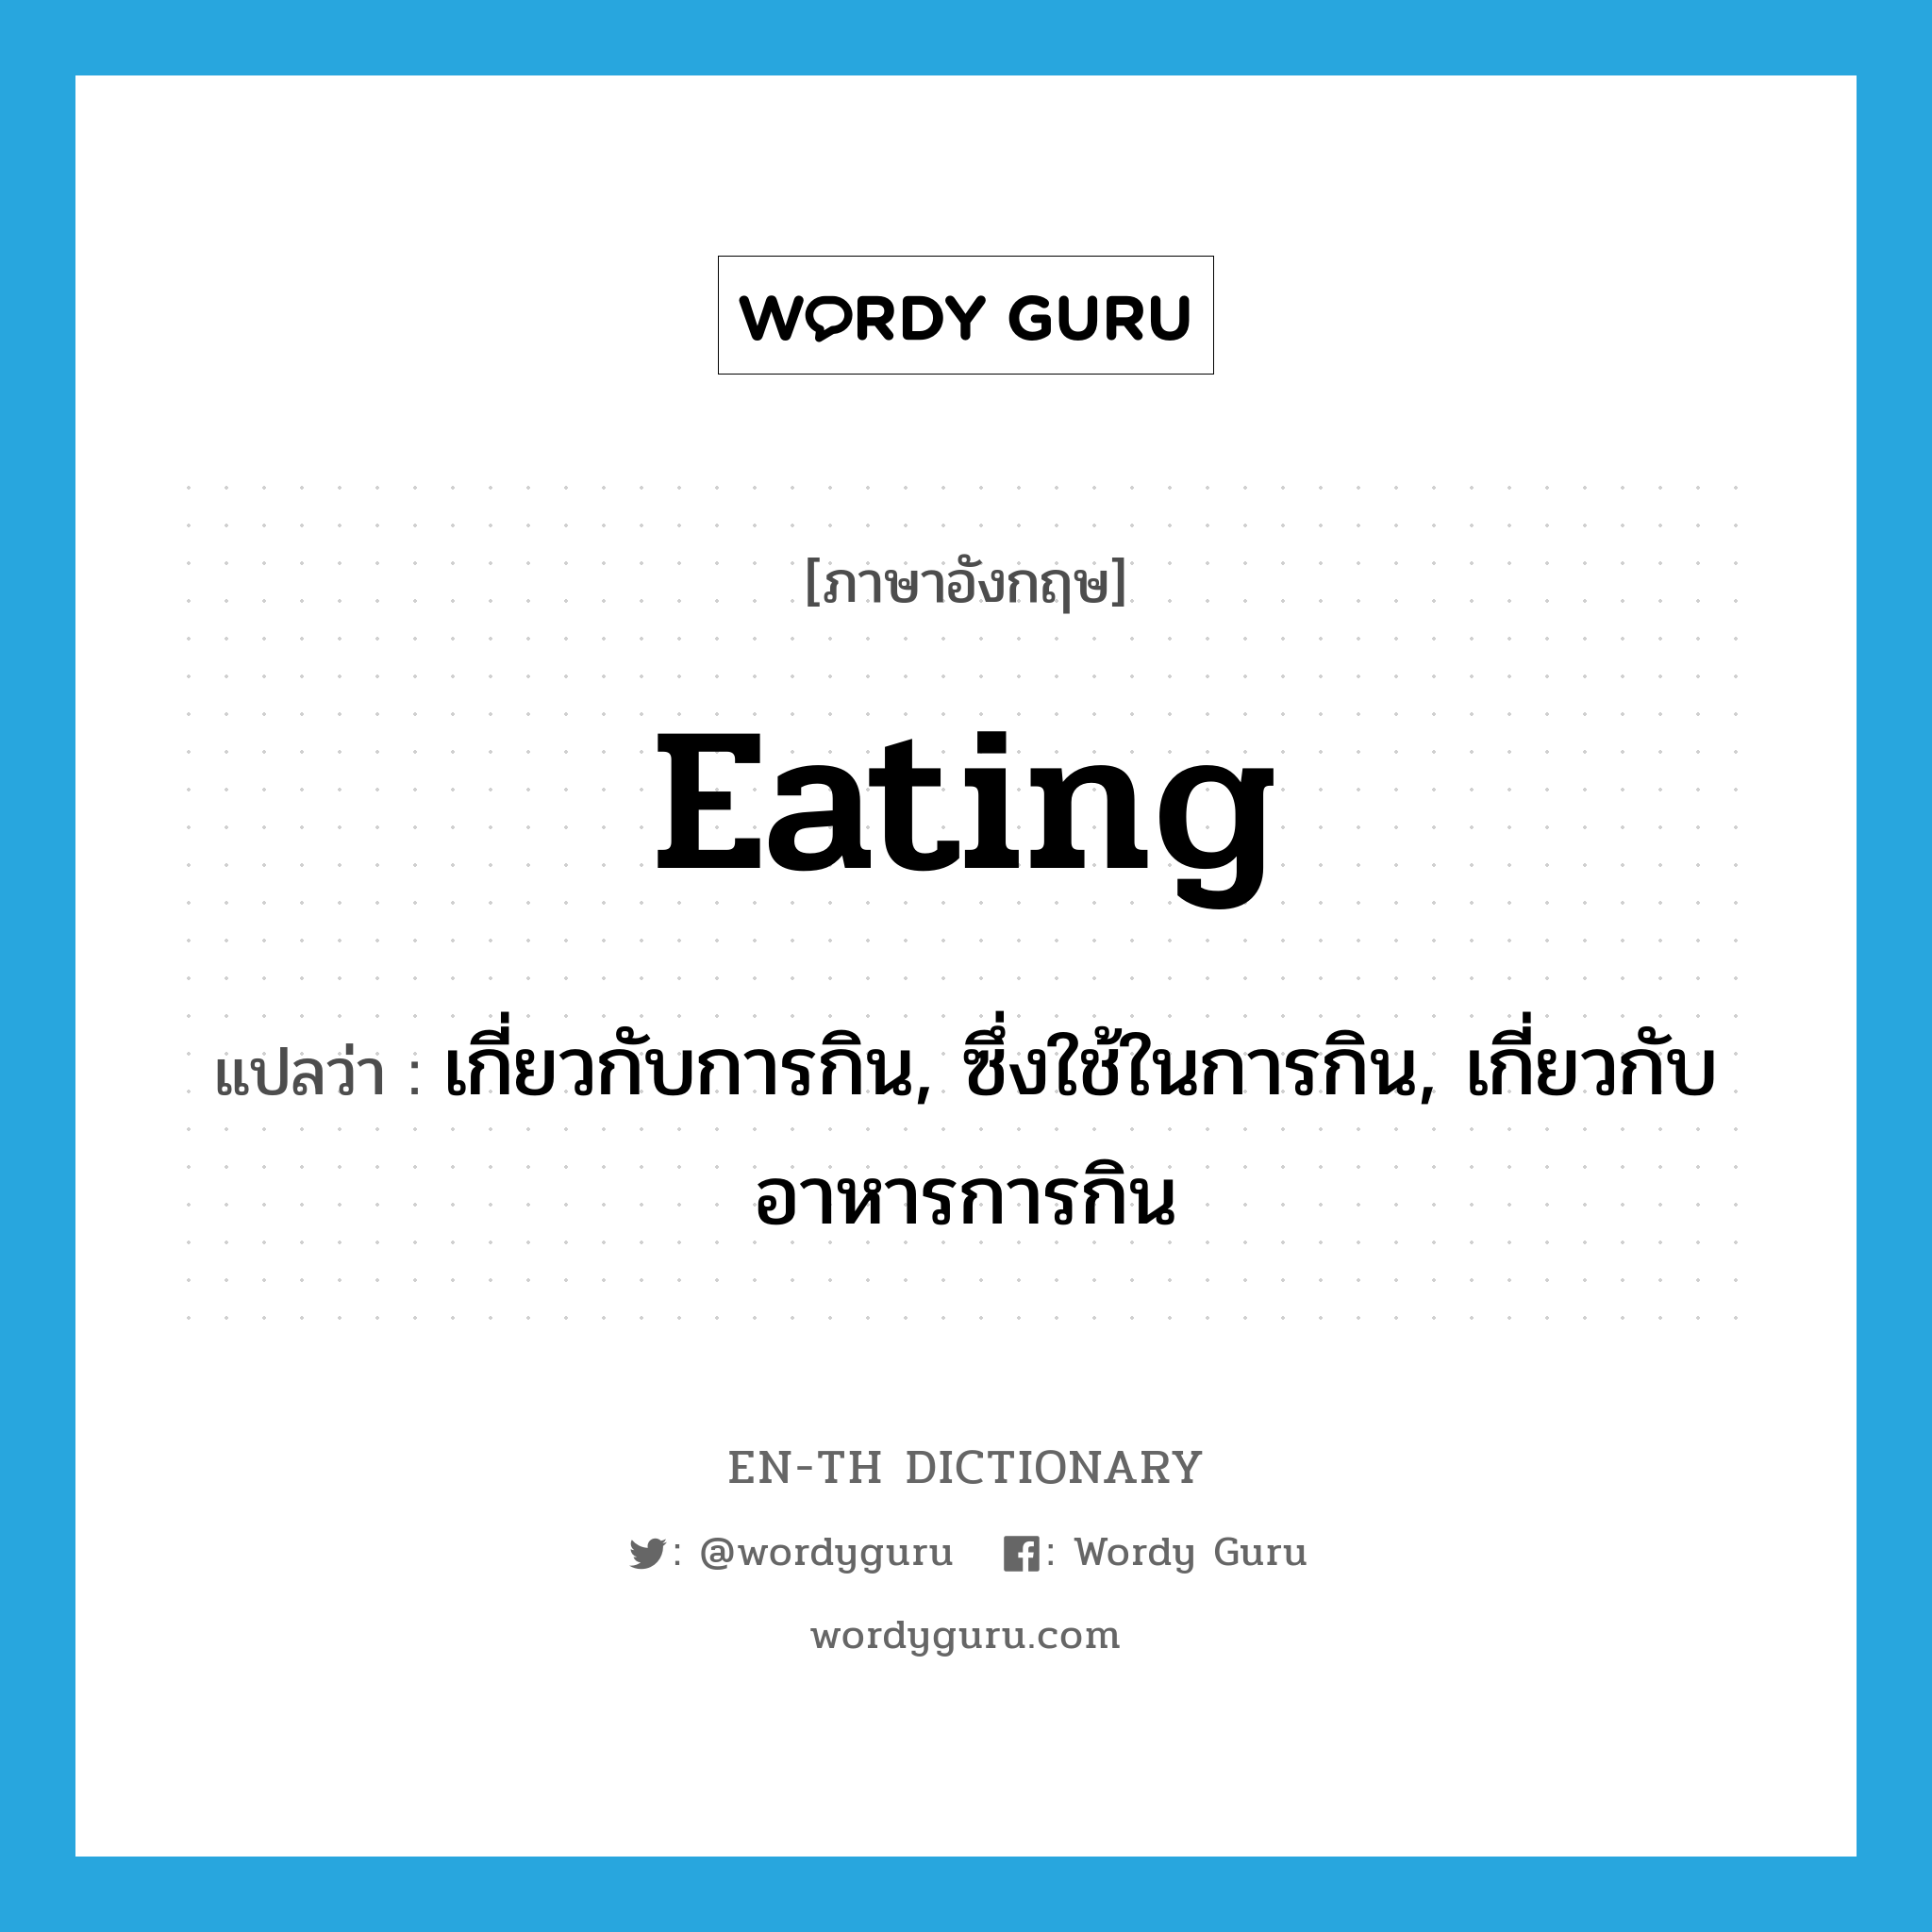 เกี่ยวกับการกิน, ซึ่งใช้ในการกิน, เกี่ยวกับอาหารการกิน ภาษาอังกฤษ?, คำศัพท์ภาษาอังกฤษ เกี่ยวกับการกิน, ซึ่งใช้ในการกิน, เกี่ยวกับอาหารการกิน แปลว่า eating ประเภท ADJ หมวด ADJ